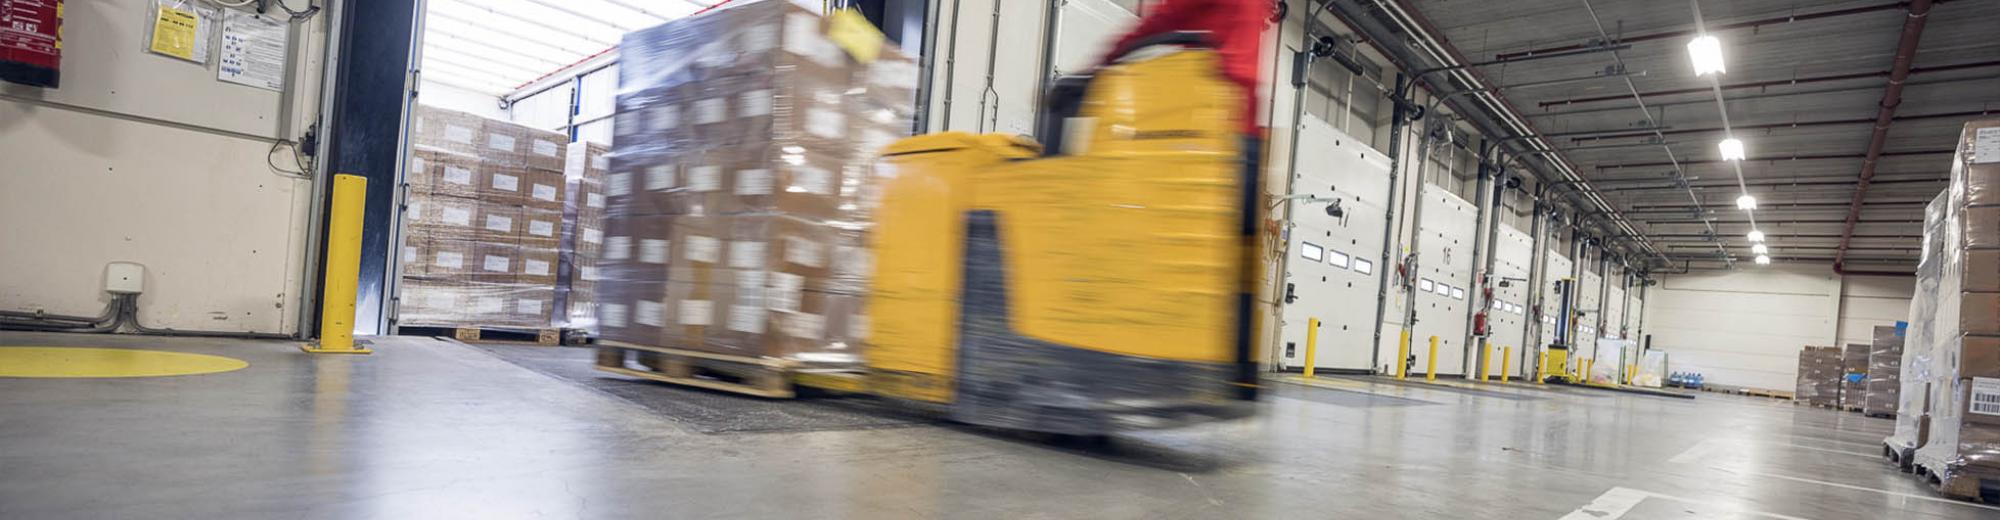 Bewegende heftruck met warehouse goederen | Seacon Logistics